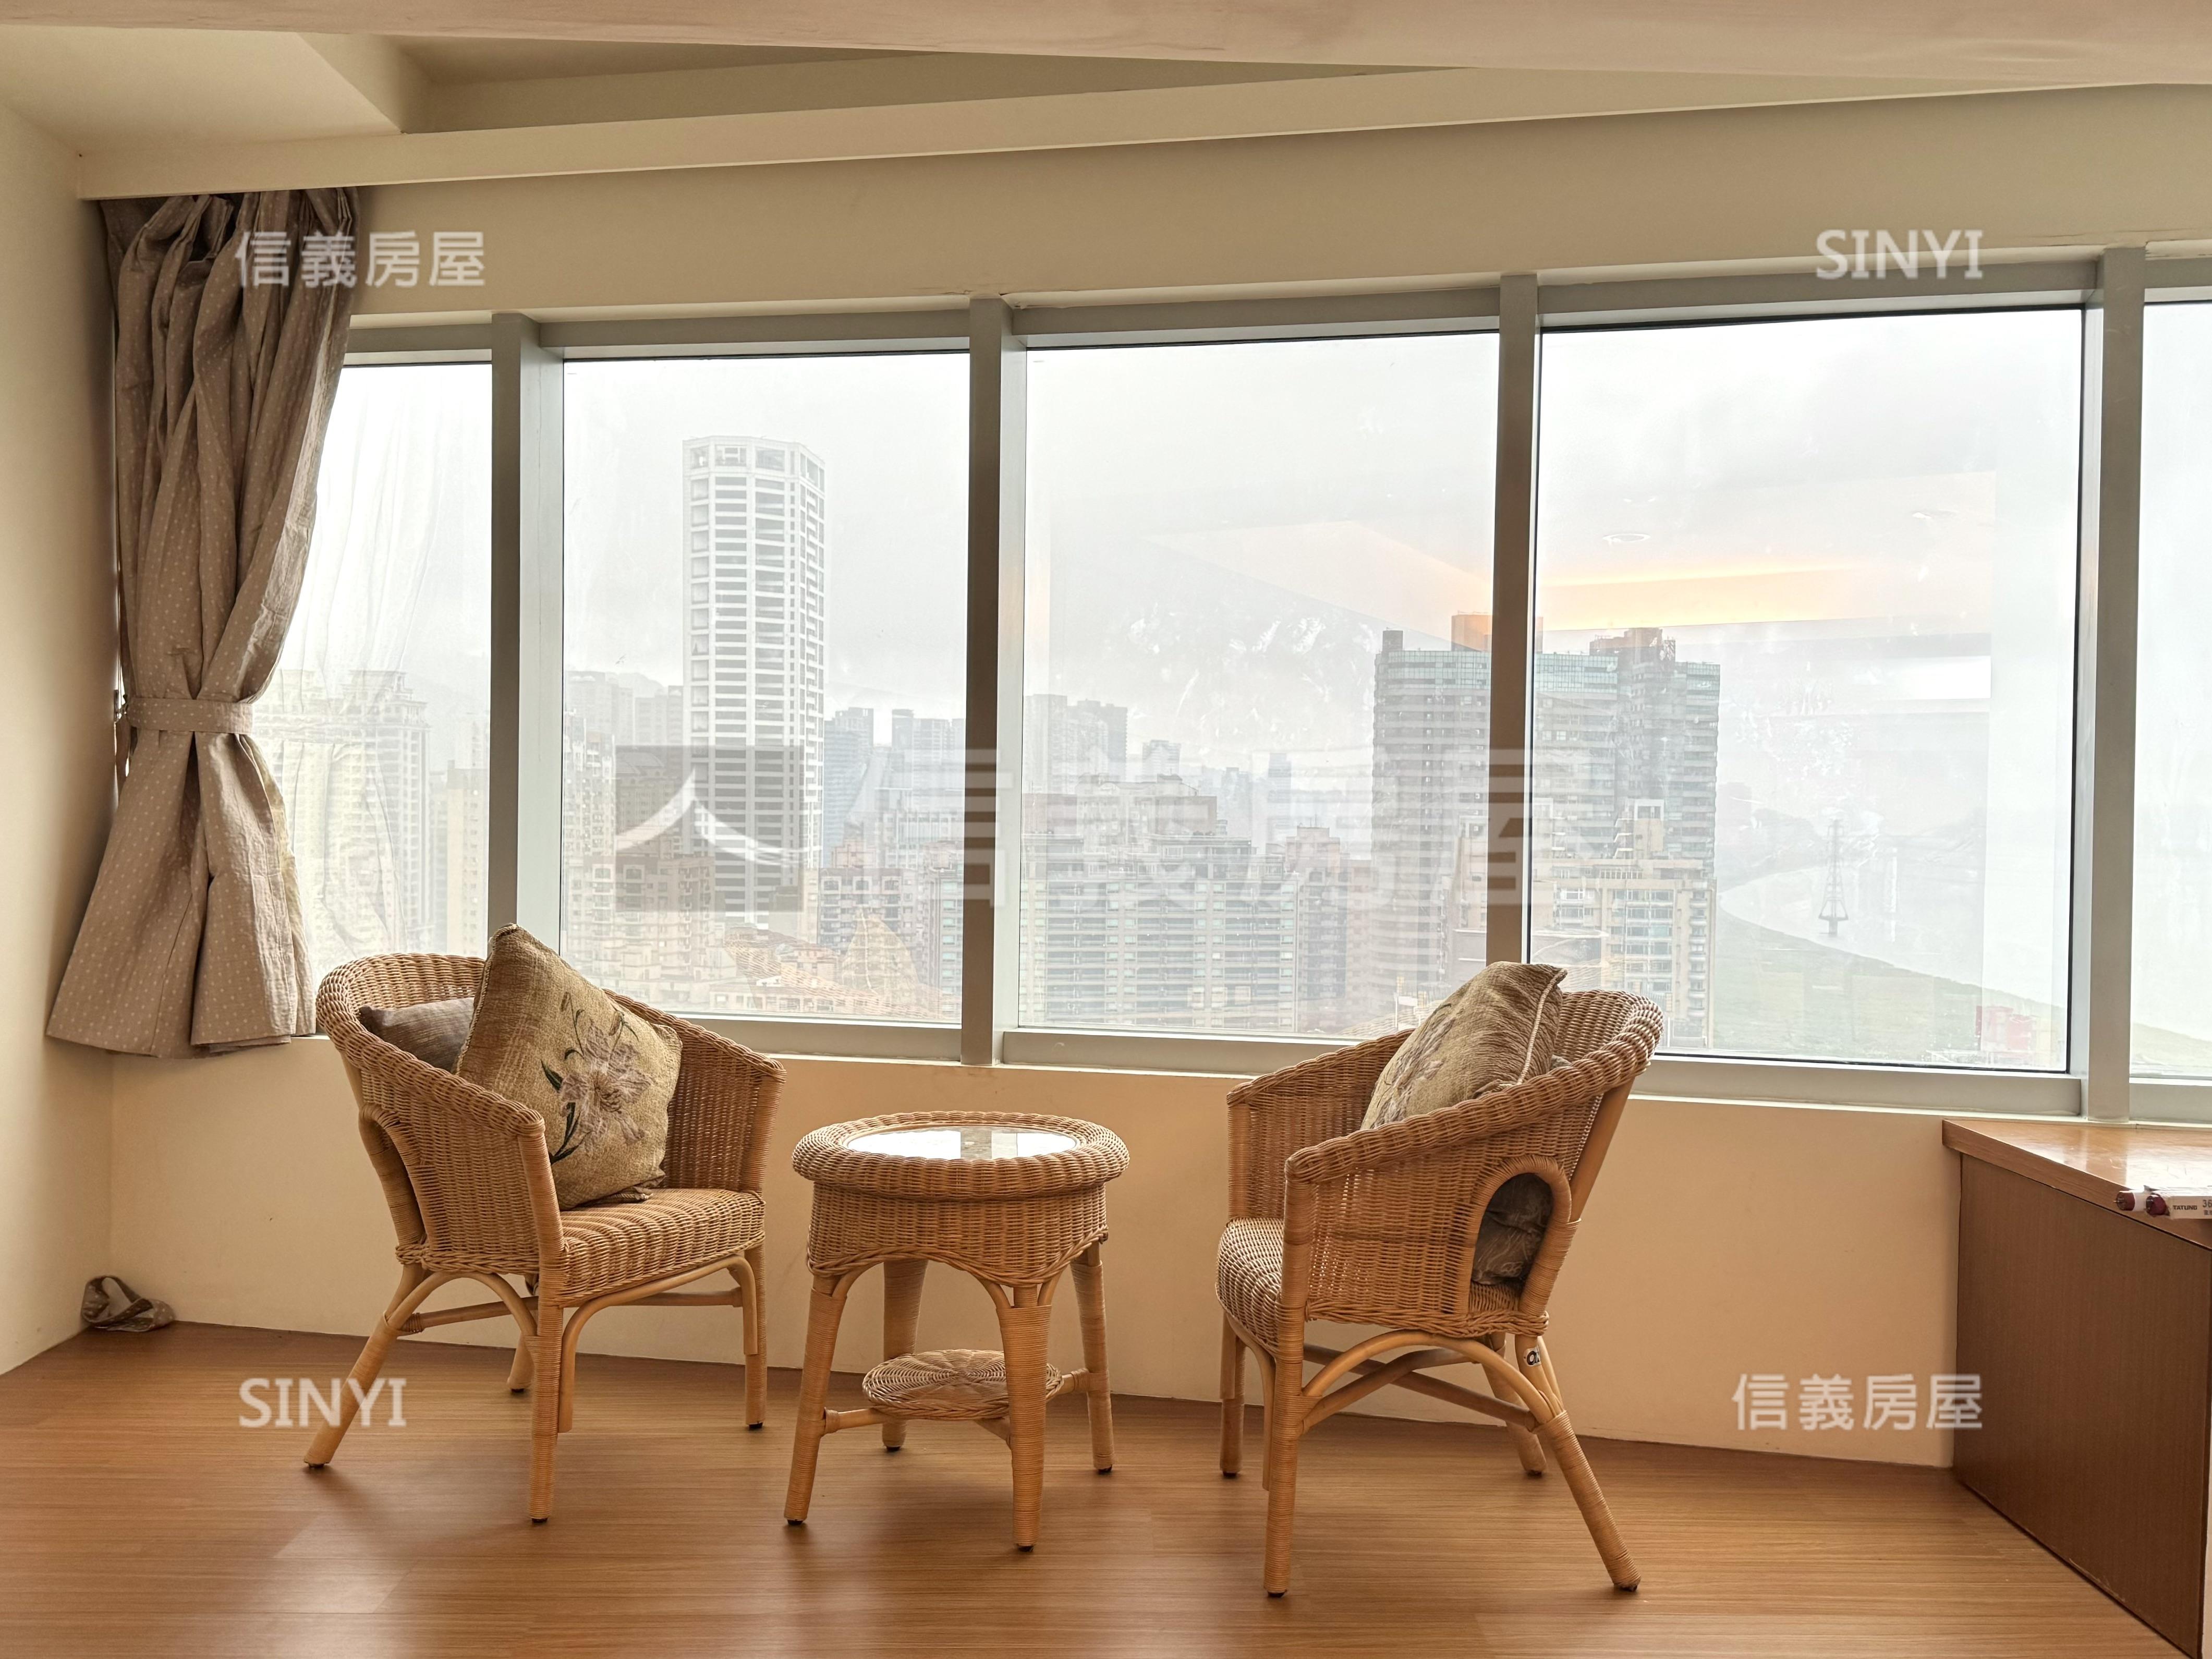 海揚★高樓景觀美麗四房房屋室內格局與周邊環境